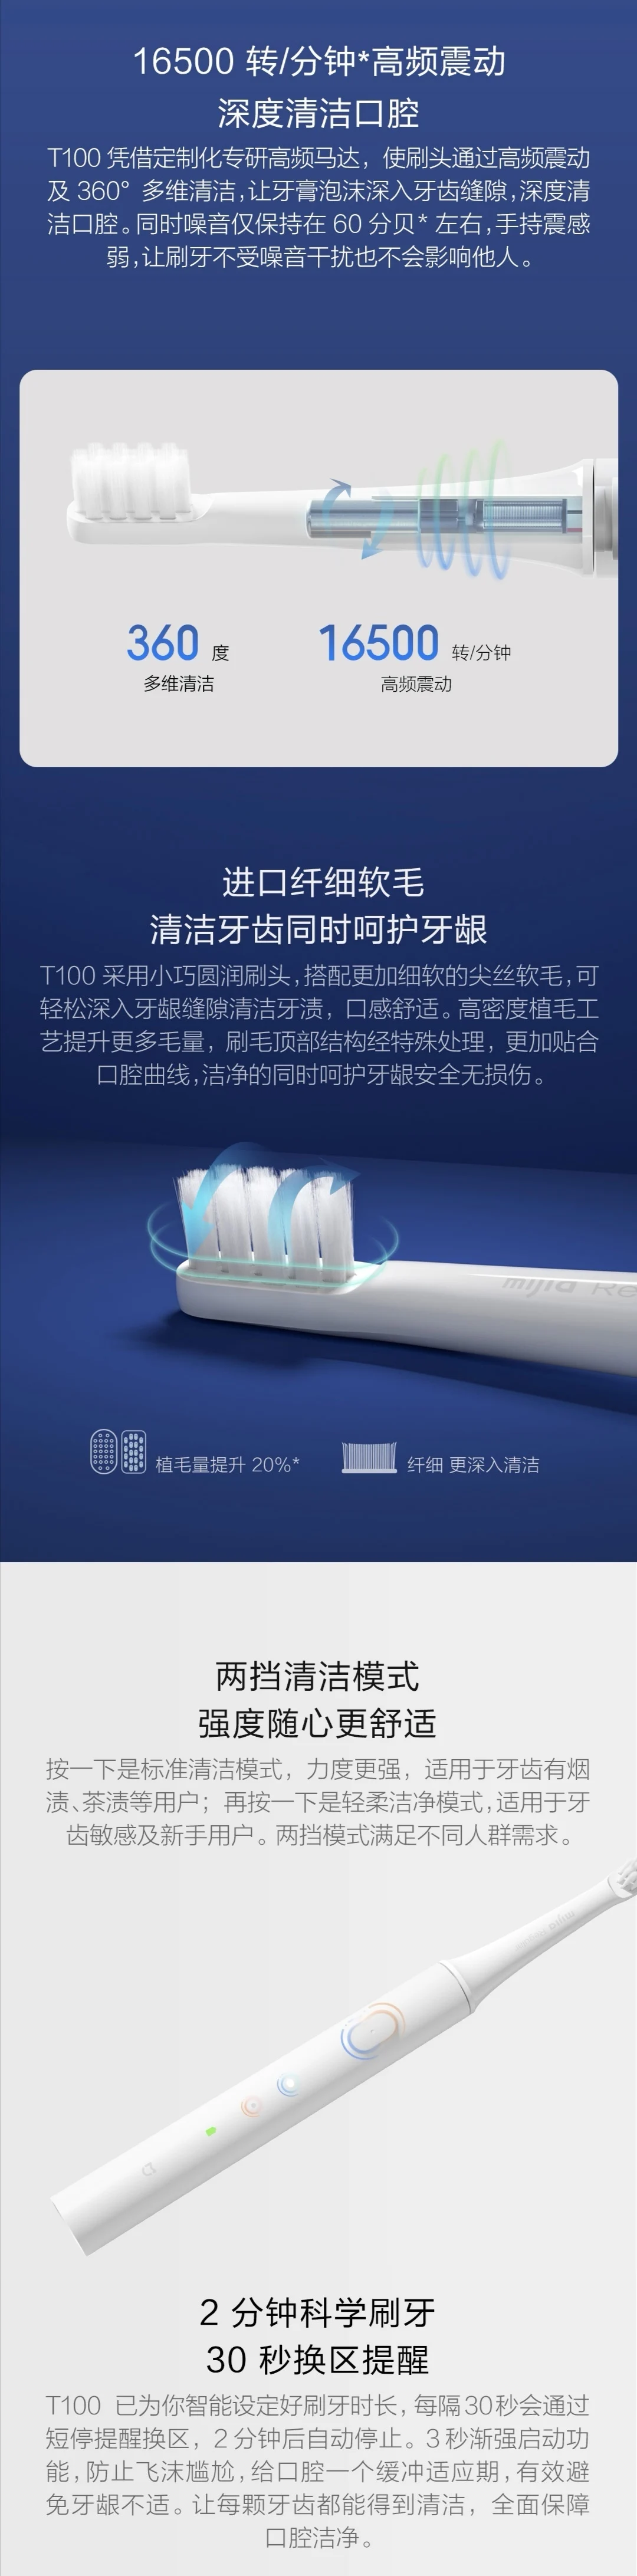 Xiao mi jia T100 mi умная электрическая зубная щетка 30 дней последняя машина 46 г двухскоростной режим очистки Xio mi домашняя зубная щетка